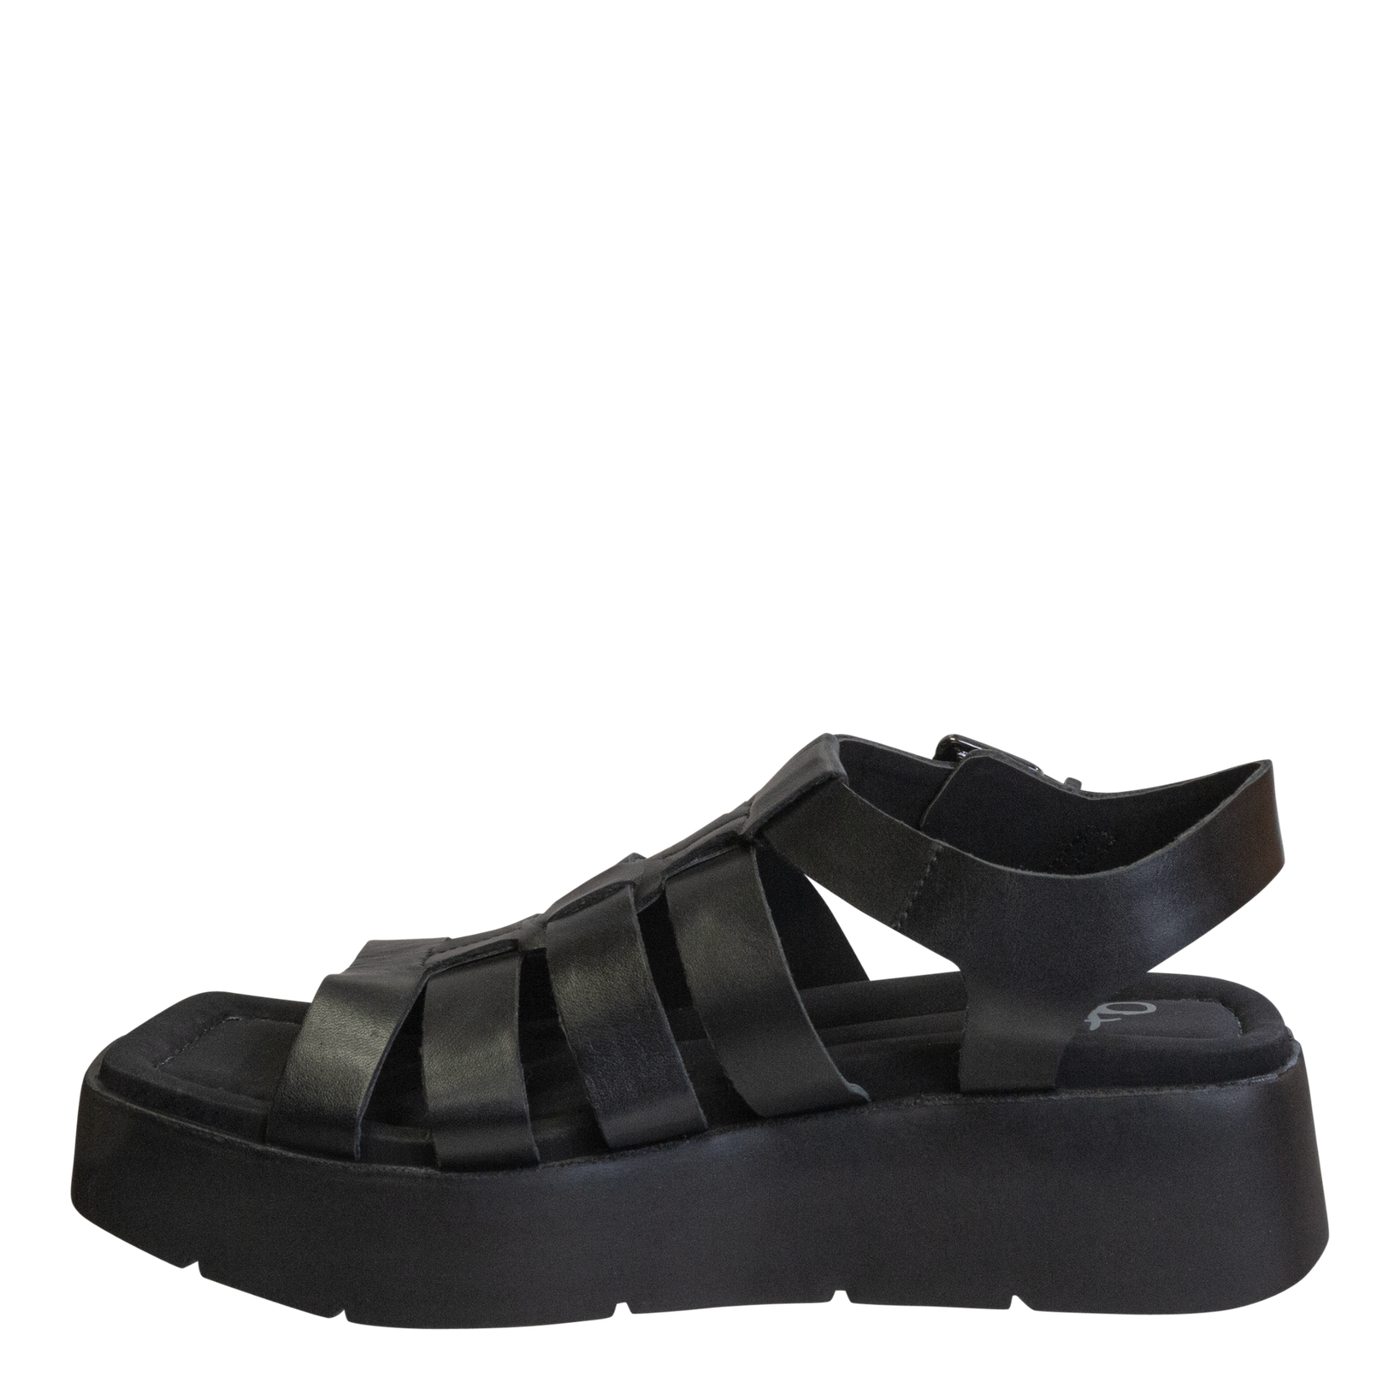 OTBT - ARCHAIC in BLACK Platform Sandals